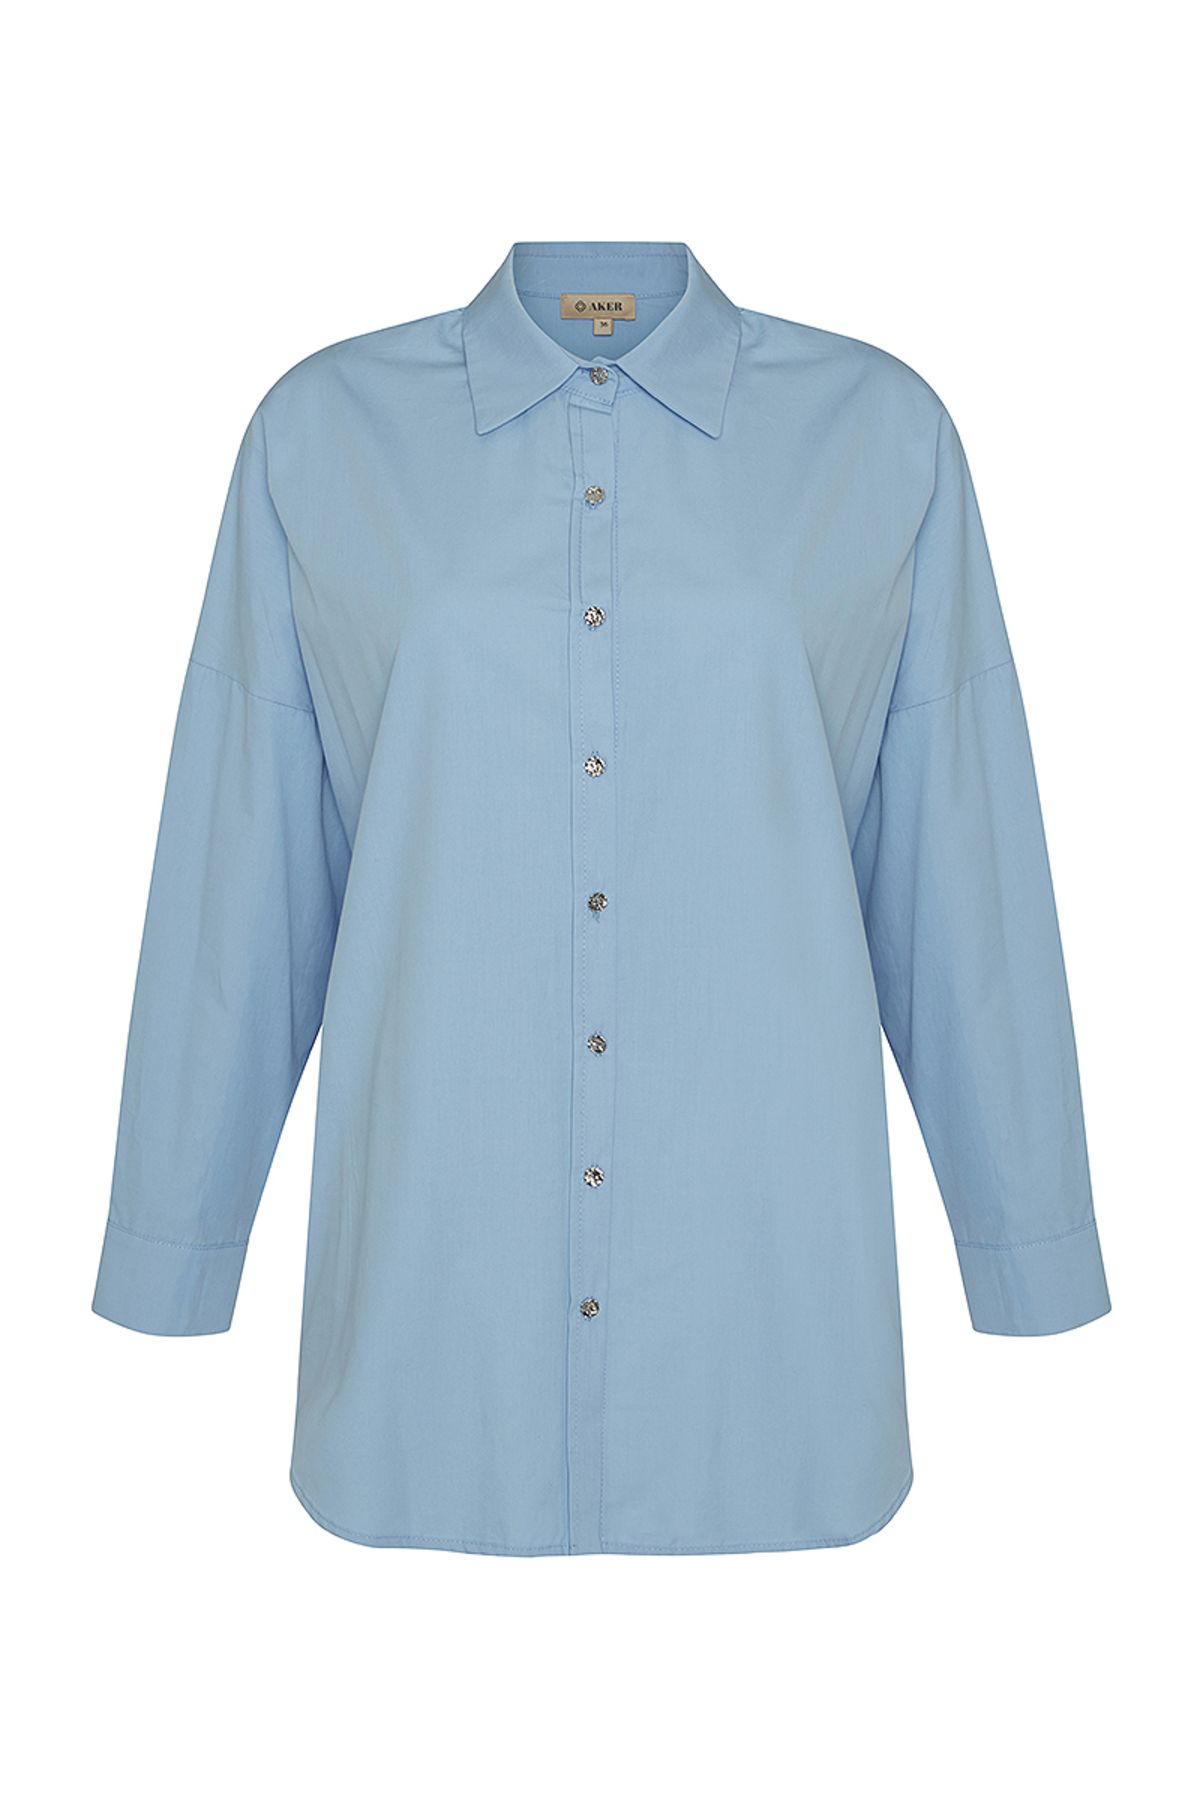 Aker Basic Cotton Bluz